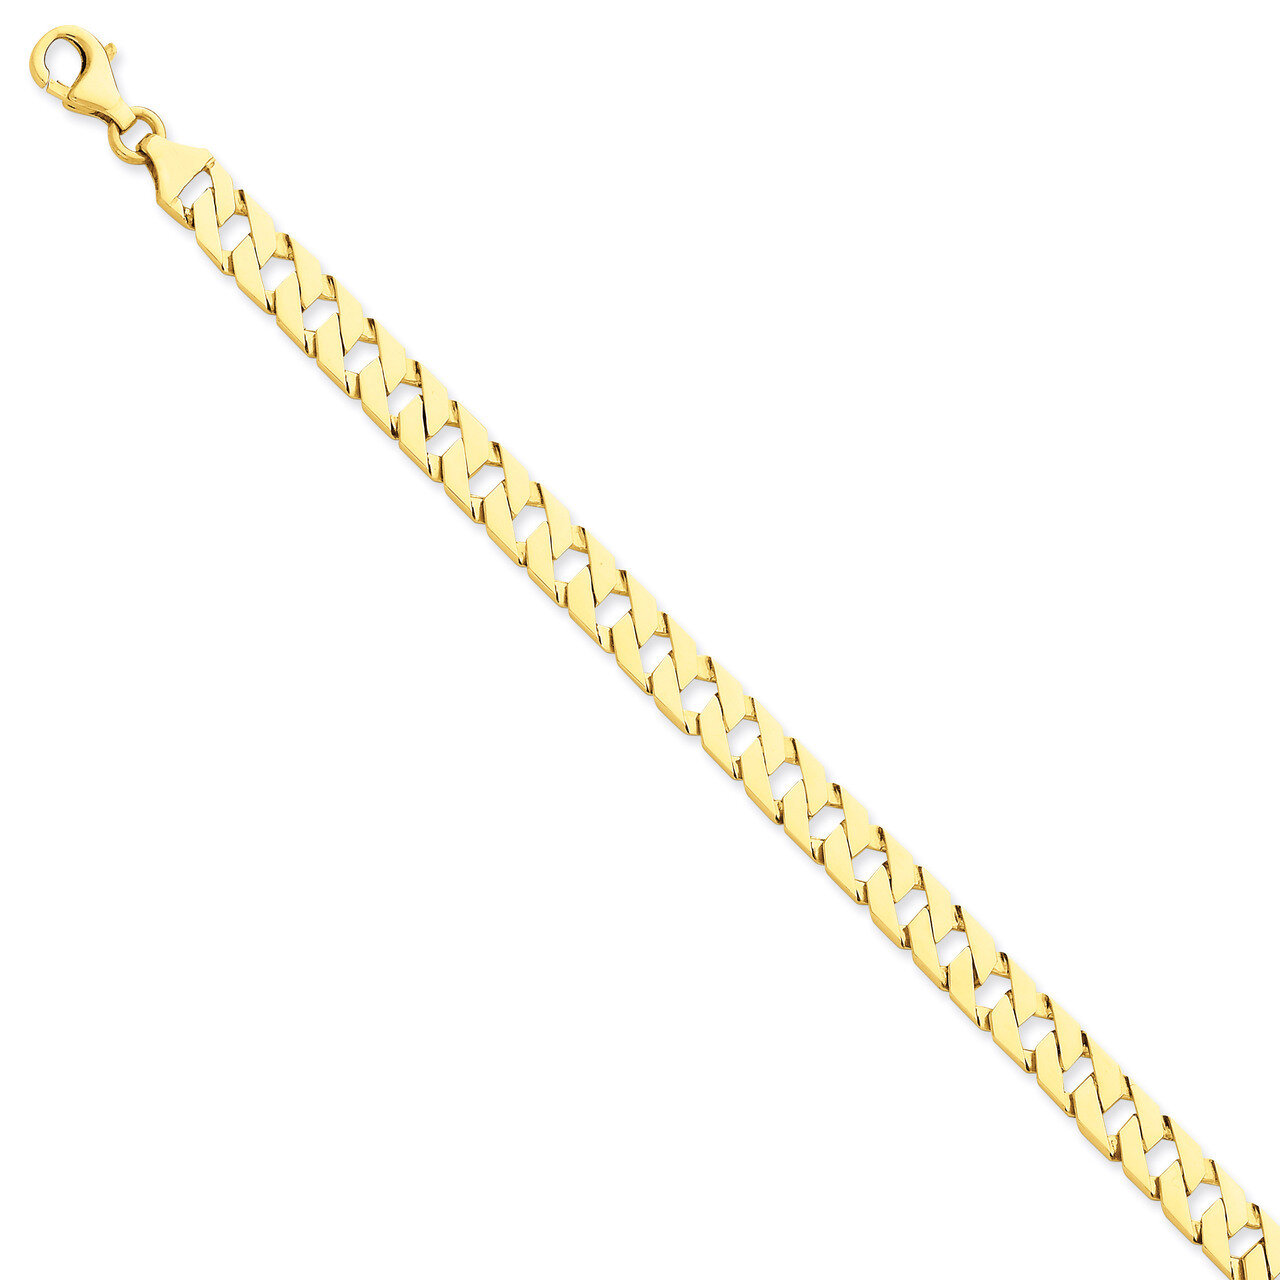 7.41mm Hand-polished Fancy Link Necklace 20 Inch 14k Gold LK149-20